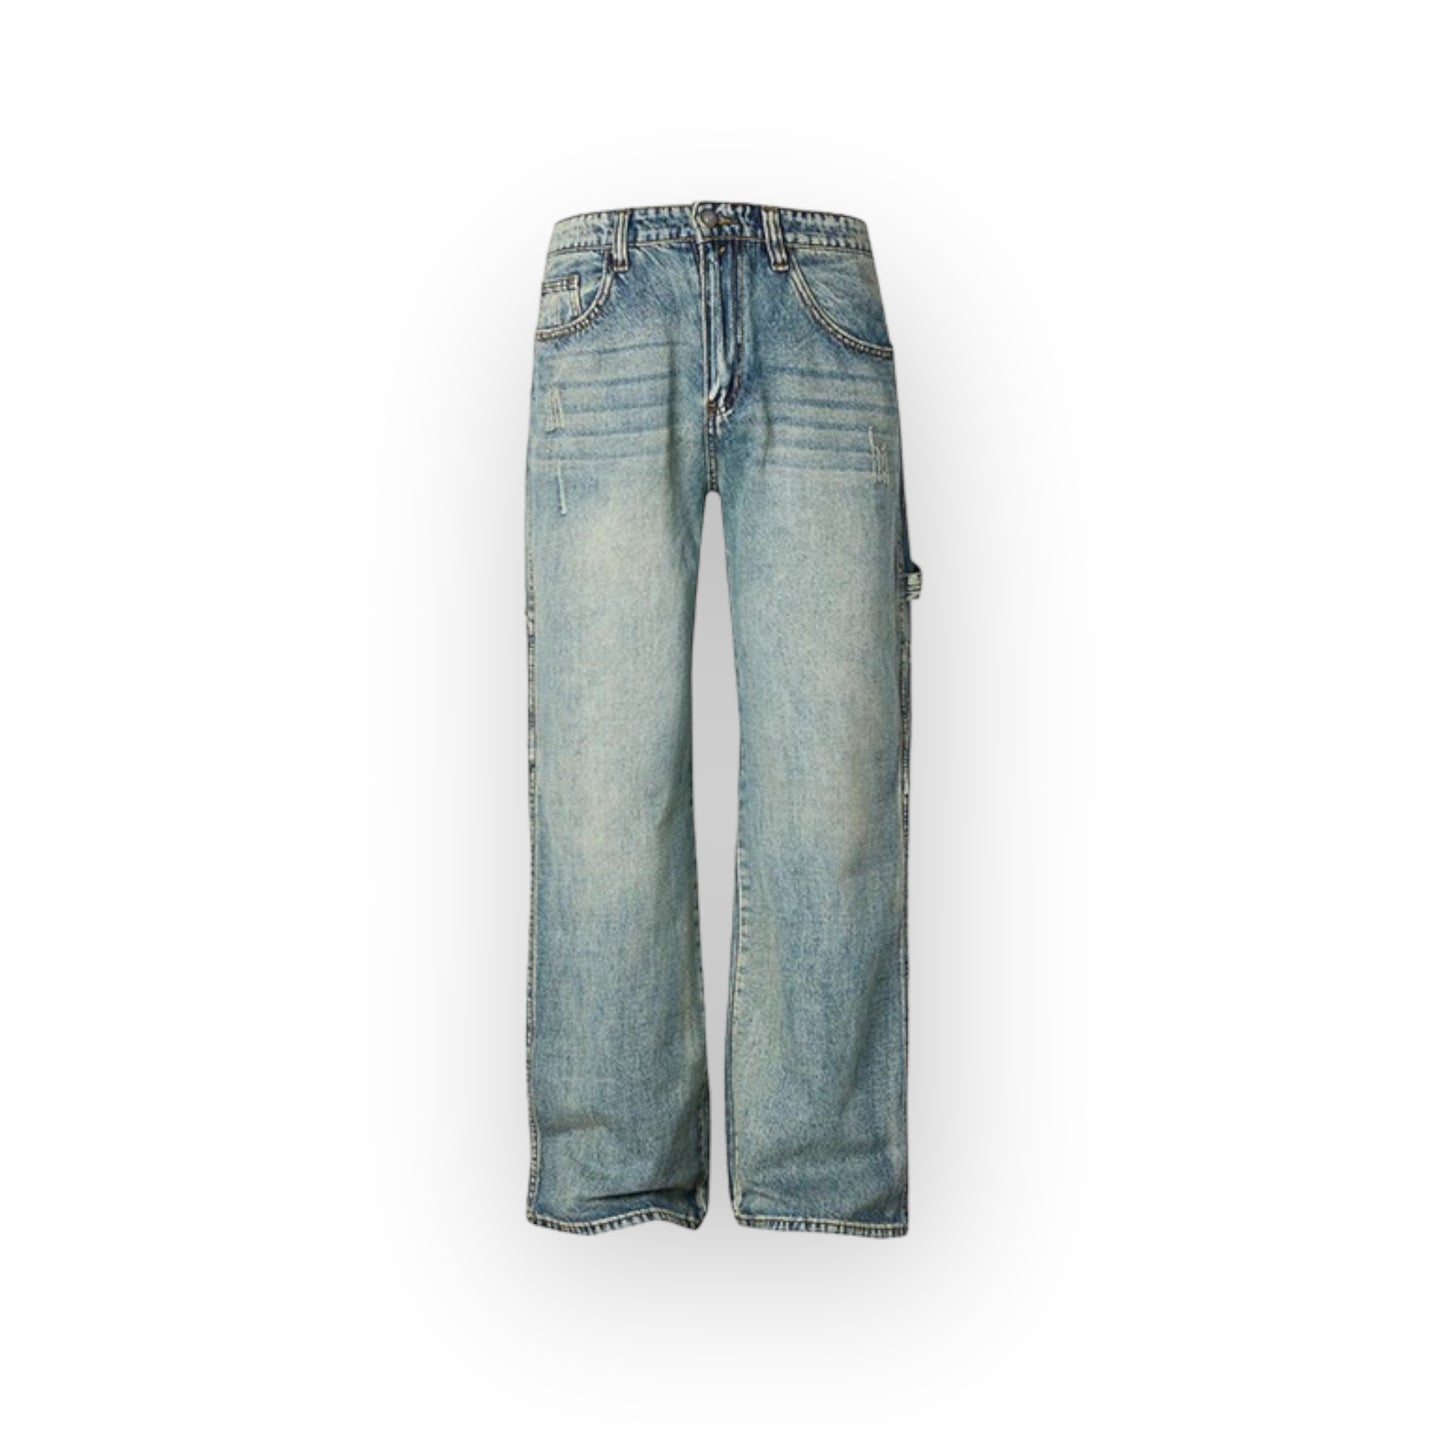 R69 Vintage Distressed Jeans